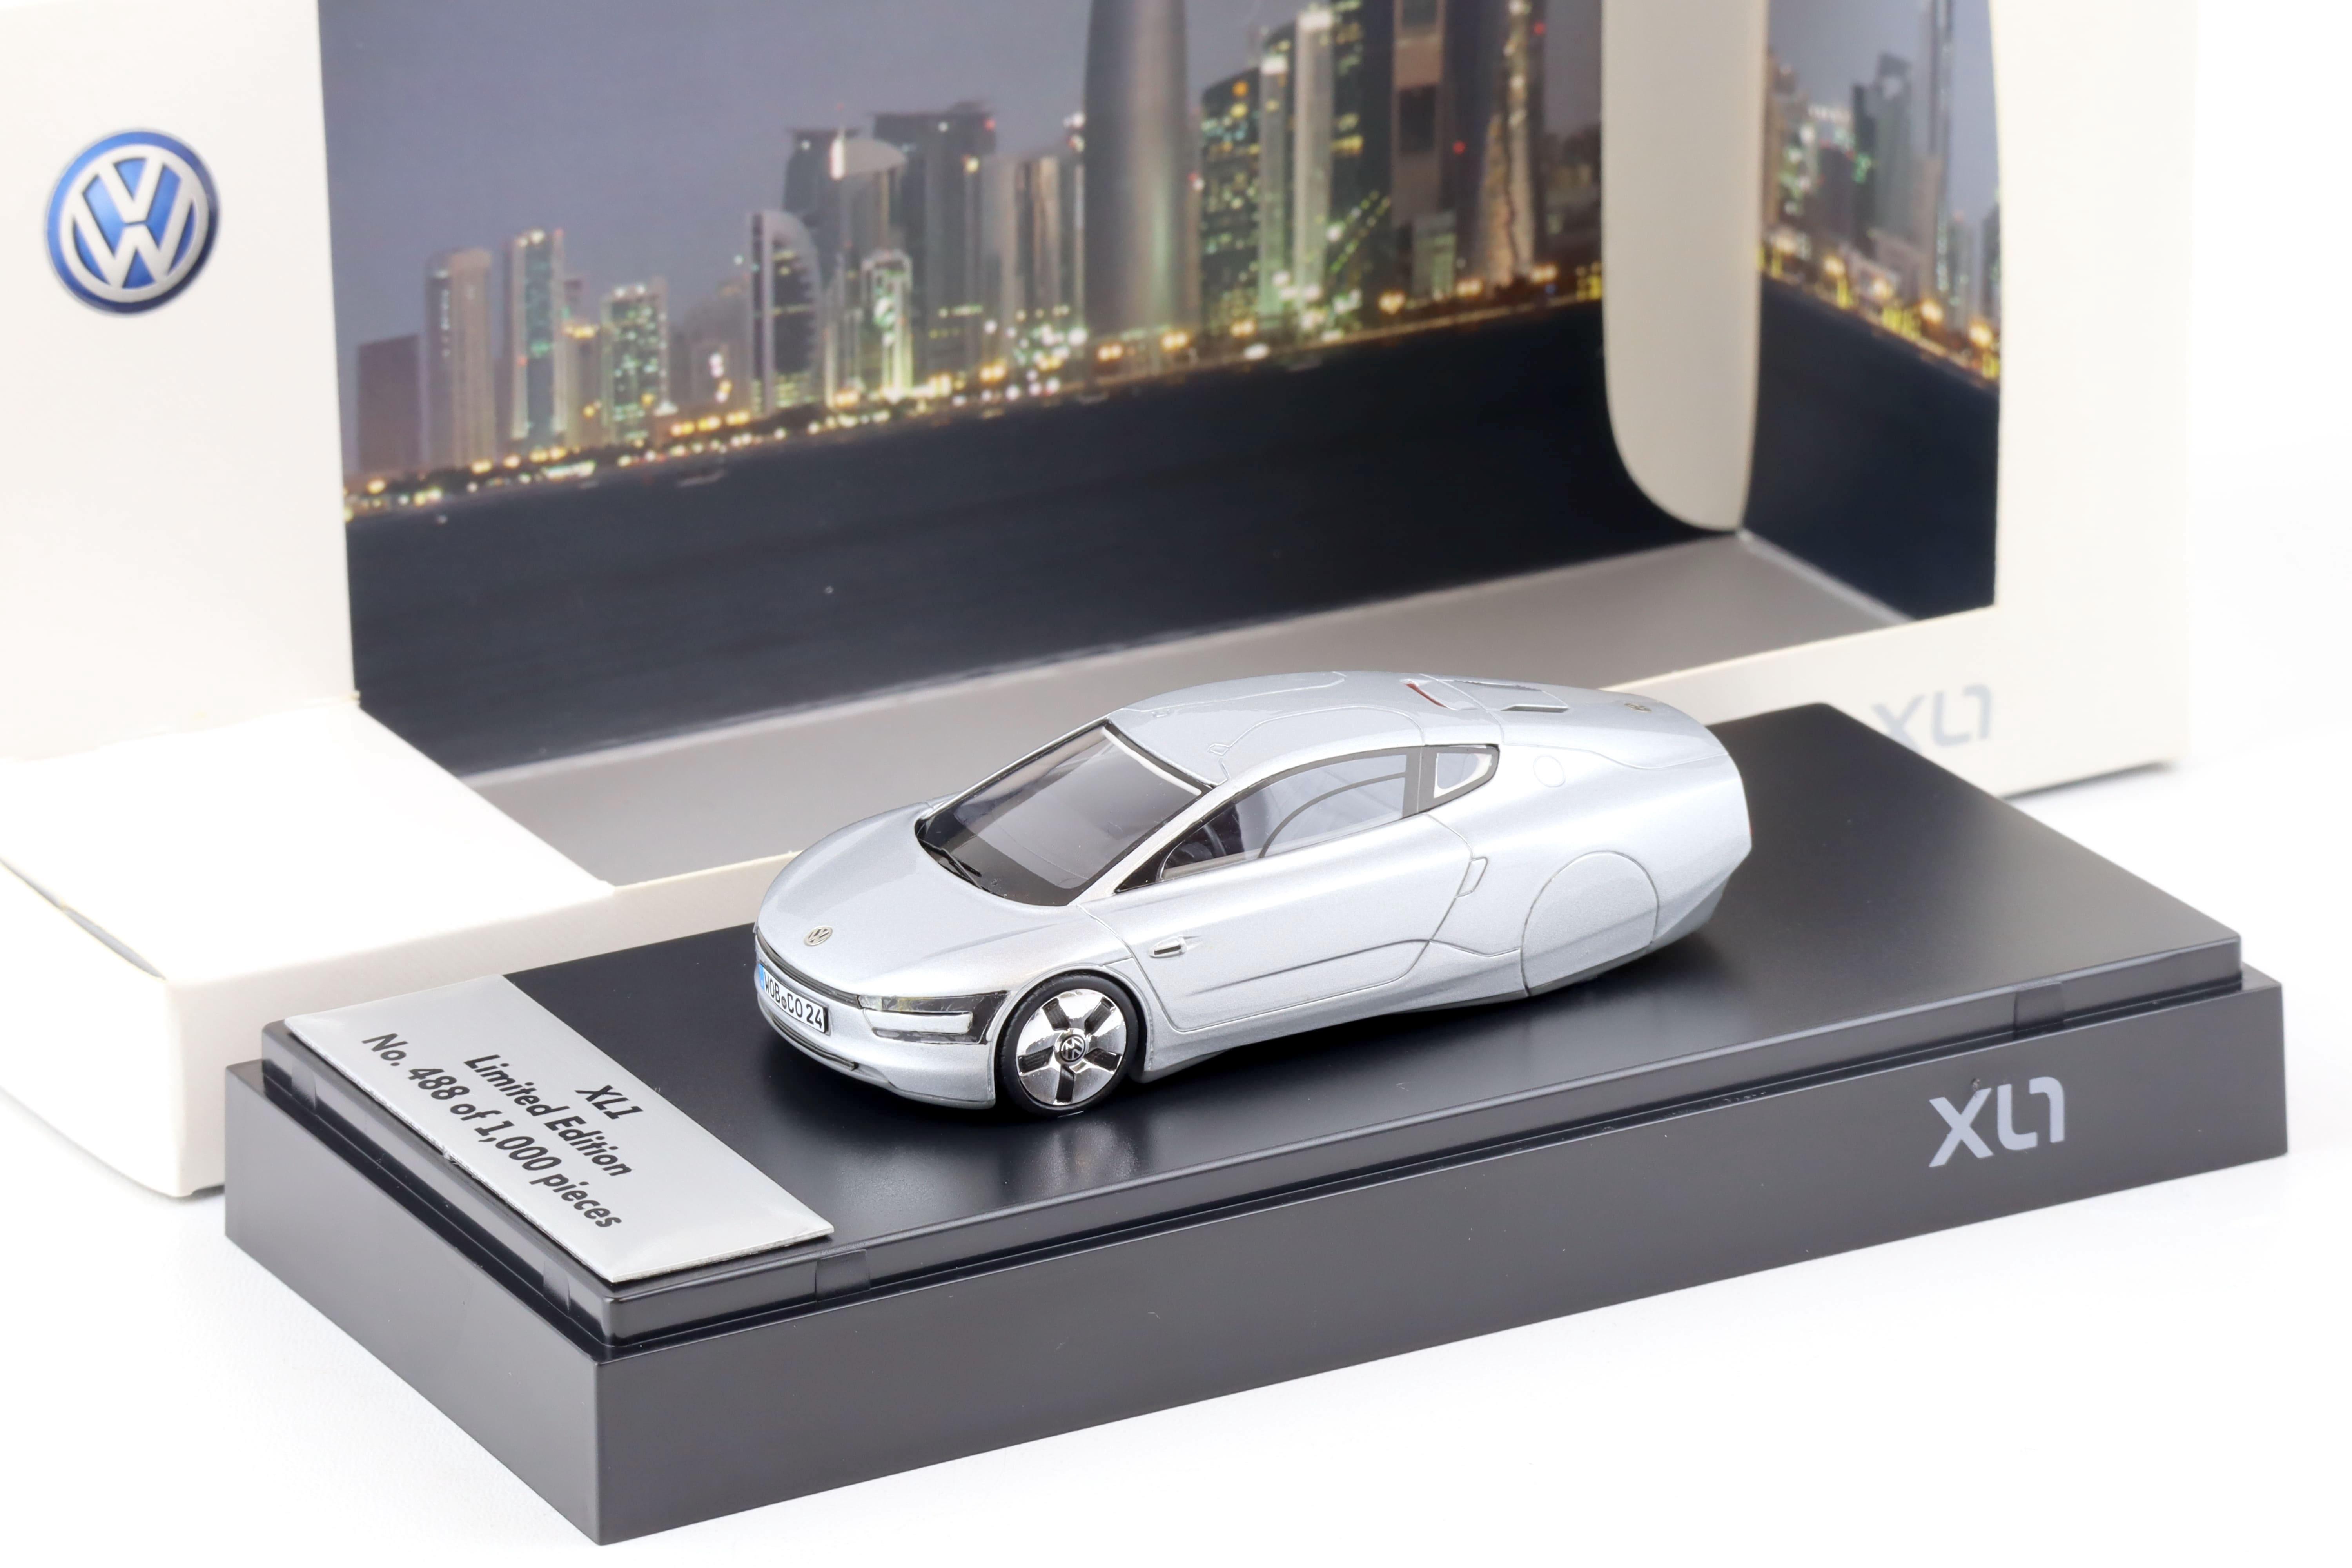 1:43 Spark VW XL1 Plug-in-Hybrid Concept Car silver DEALER VERSION